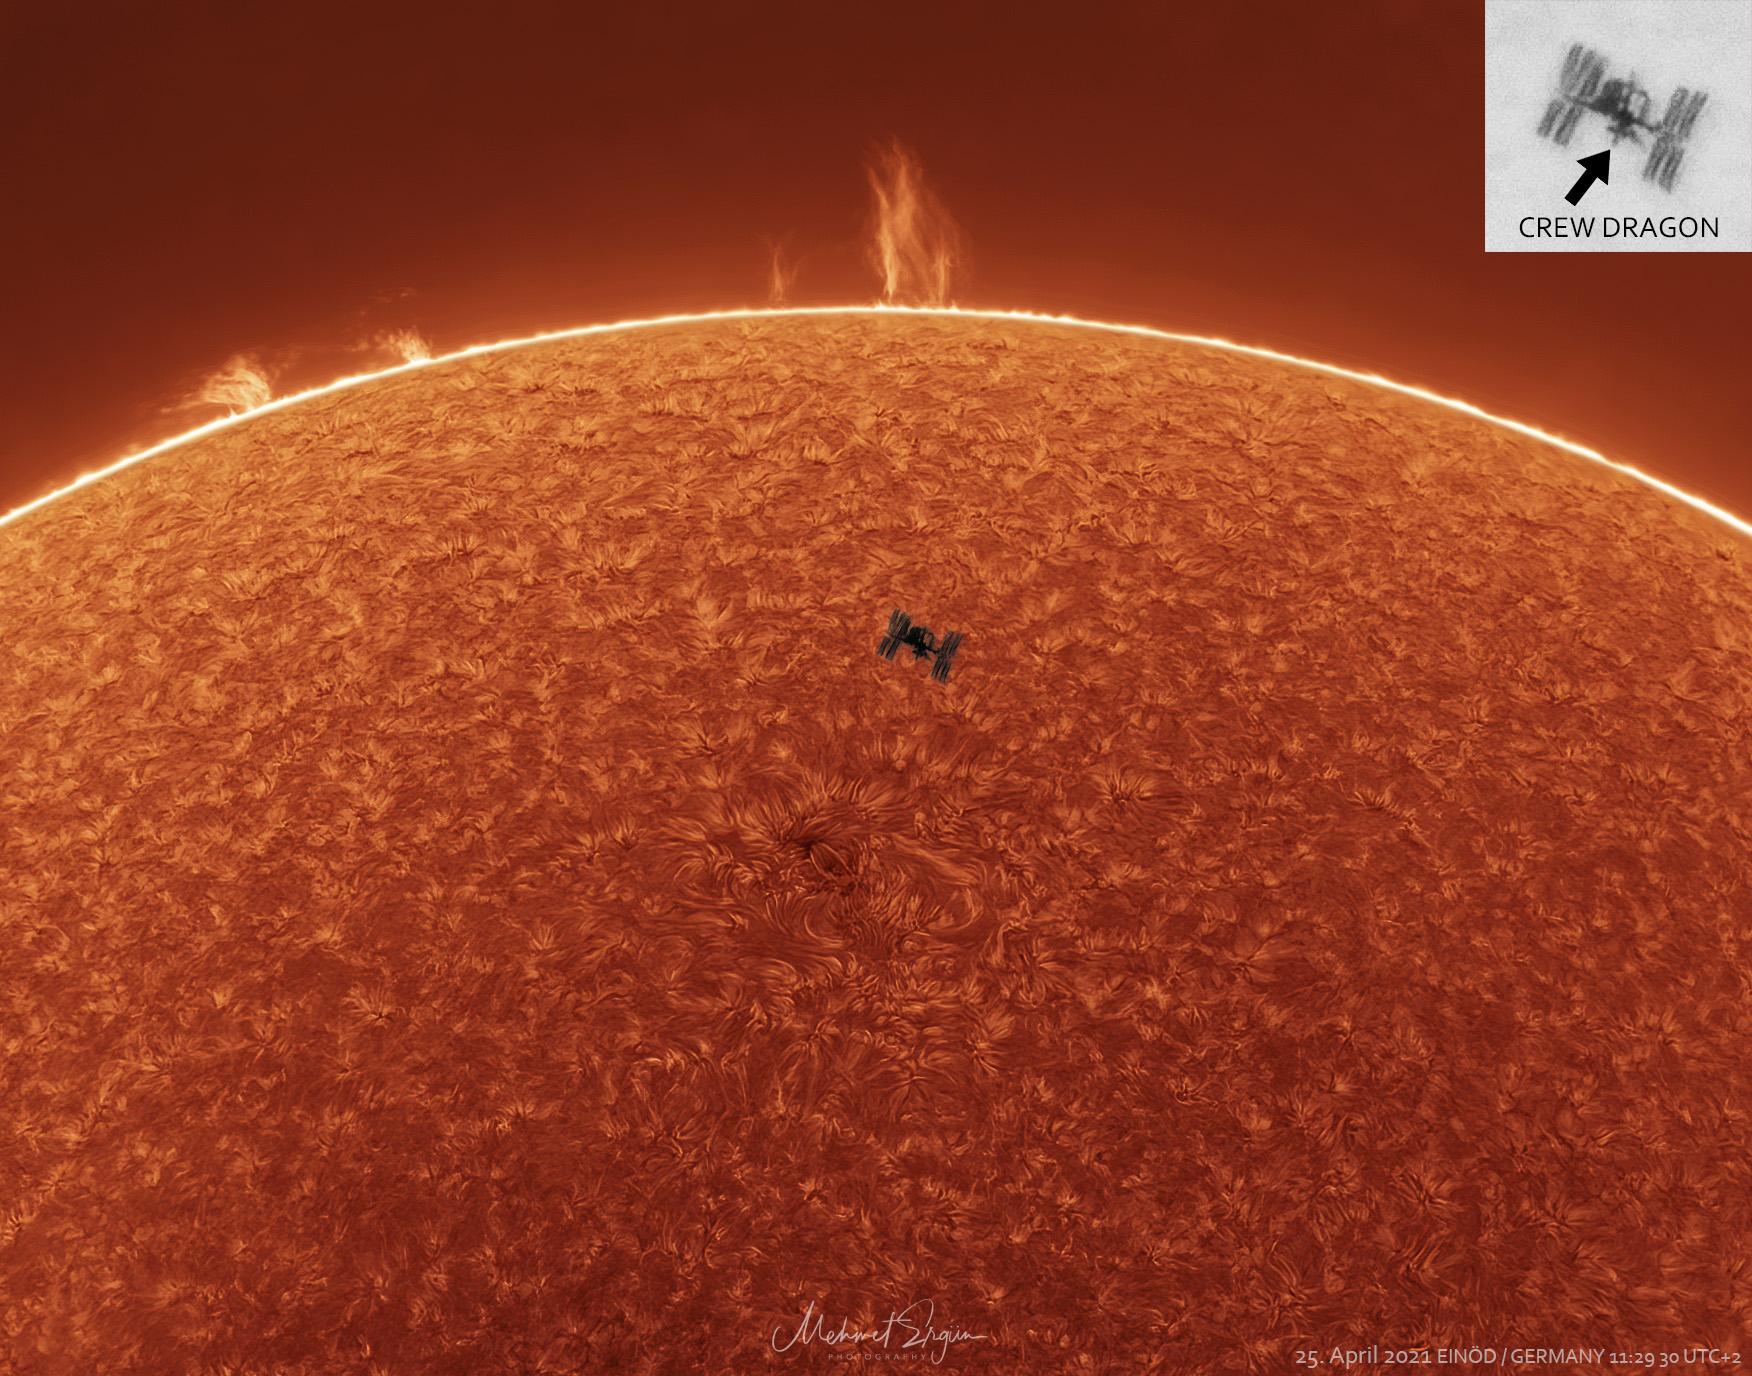 国际空间站穿越太阳的照片。请参阅说明以获取更多详细信息。